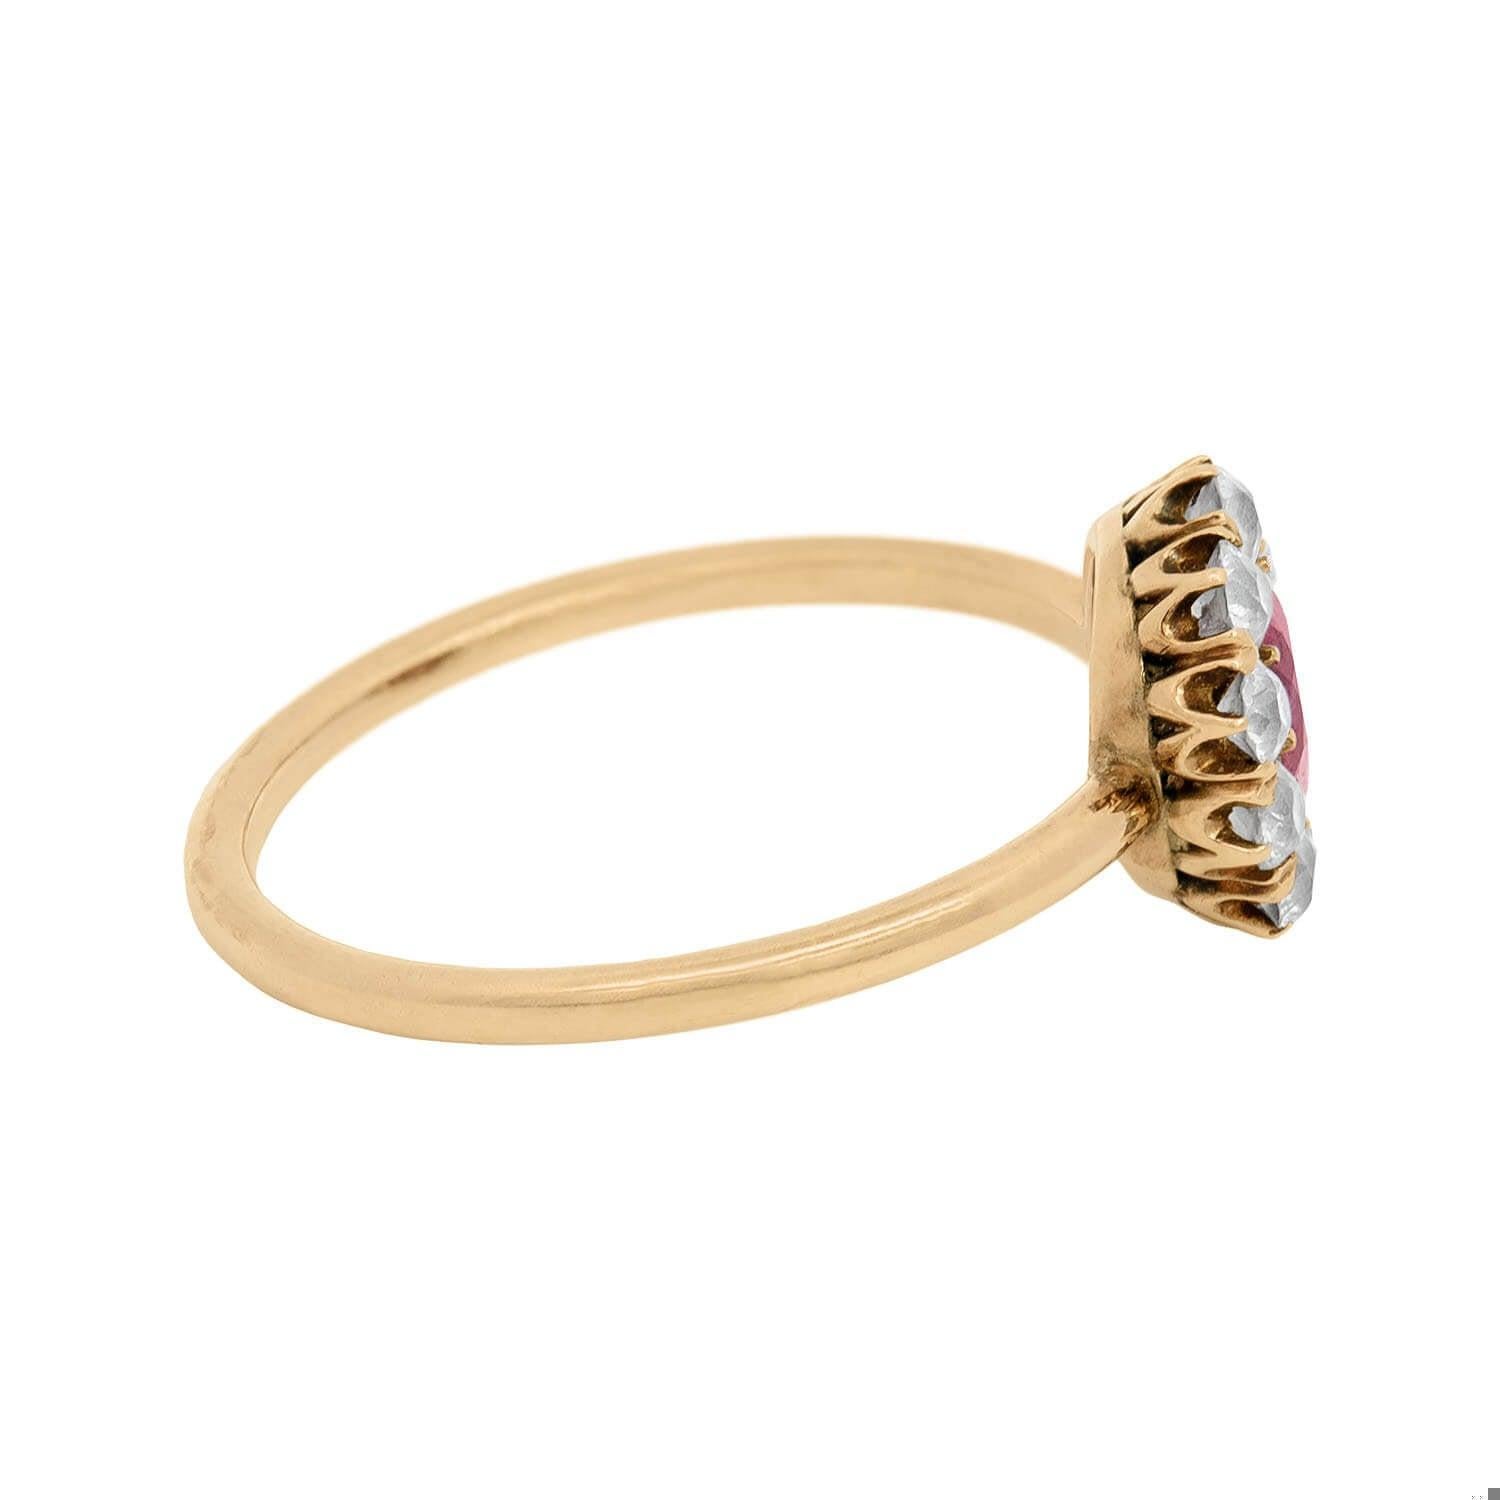 Ein wunderschöner Rubin- und Diamantring aus der viktorianischen Ära (ca. 1880)! Dieser außergewöhnliche Ring ist aus leuchtendem 14-karätigem Gold gefertigt. In der Mitte befindet sich ein prächtiger Burma-Rubin, der im Kissenschliff facettiert